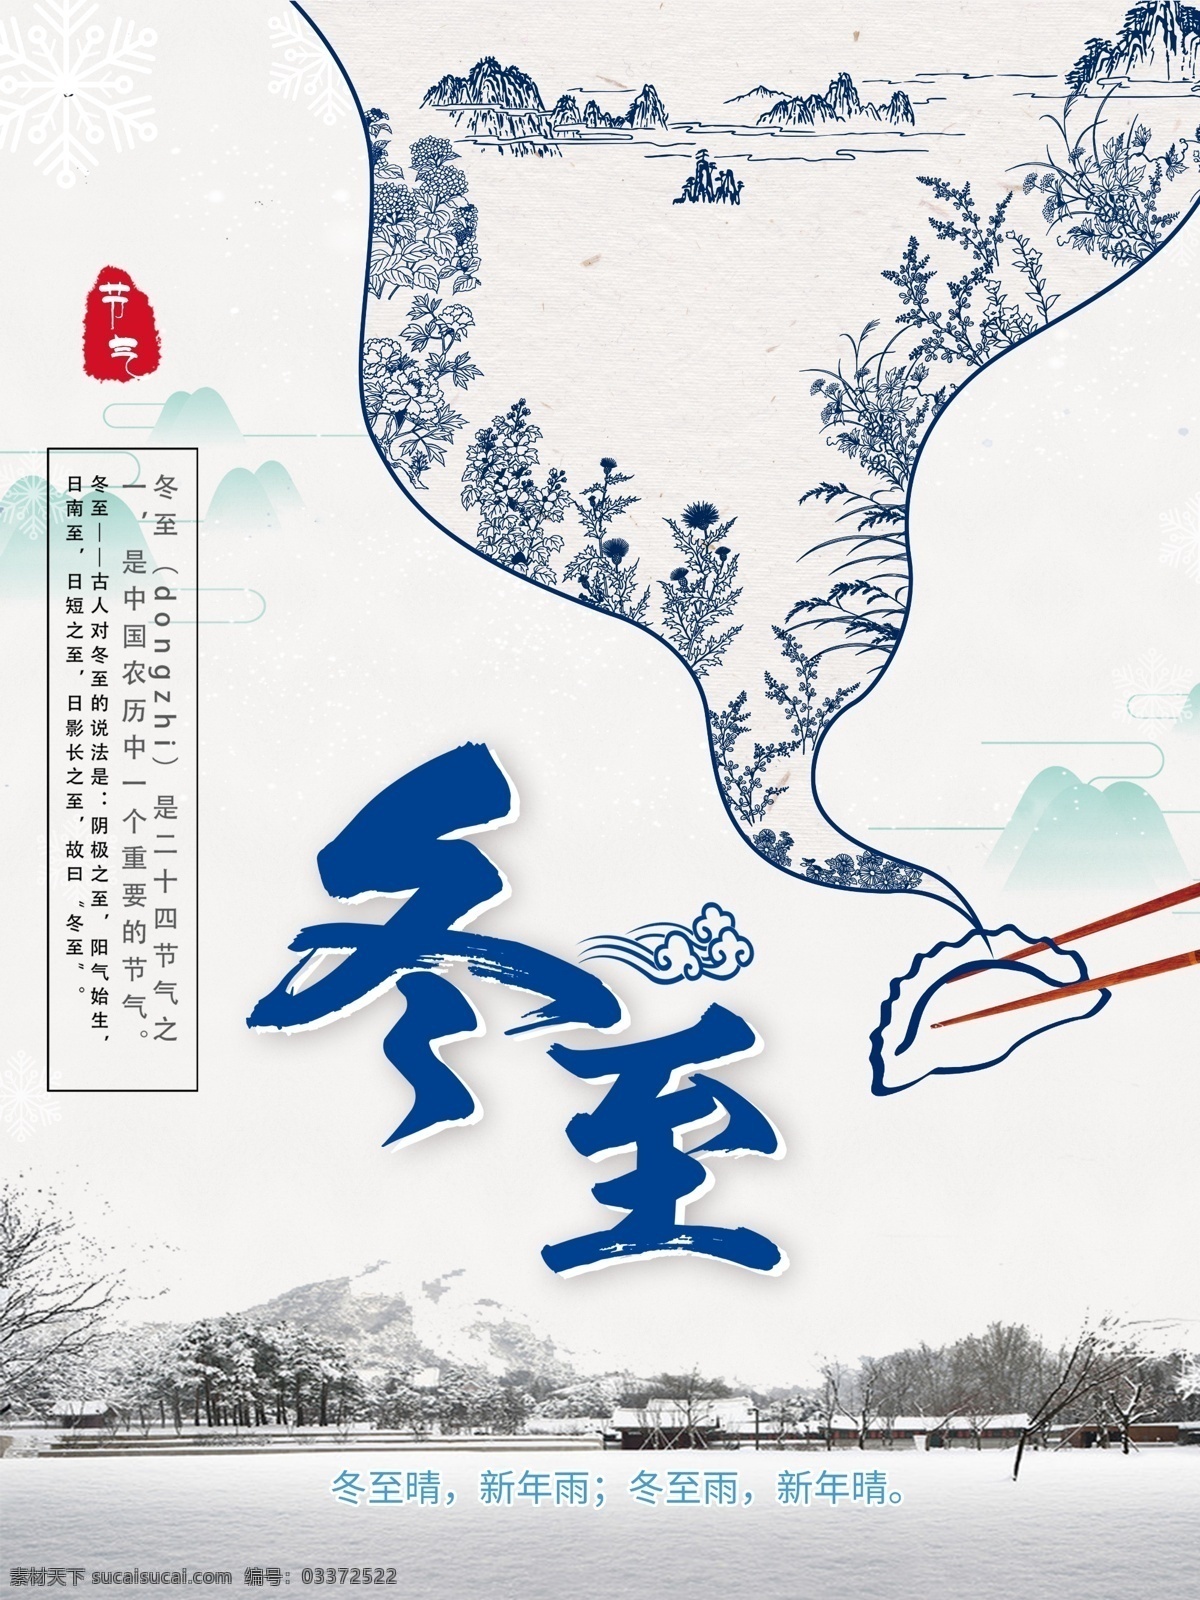 冬至 节气 饺子 山水 节日 海报 创意 广告 白色背景 背景 精致 雪花